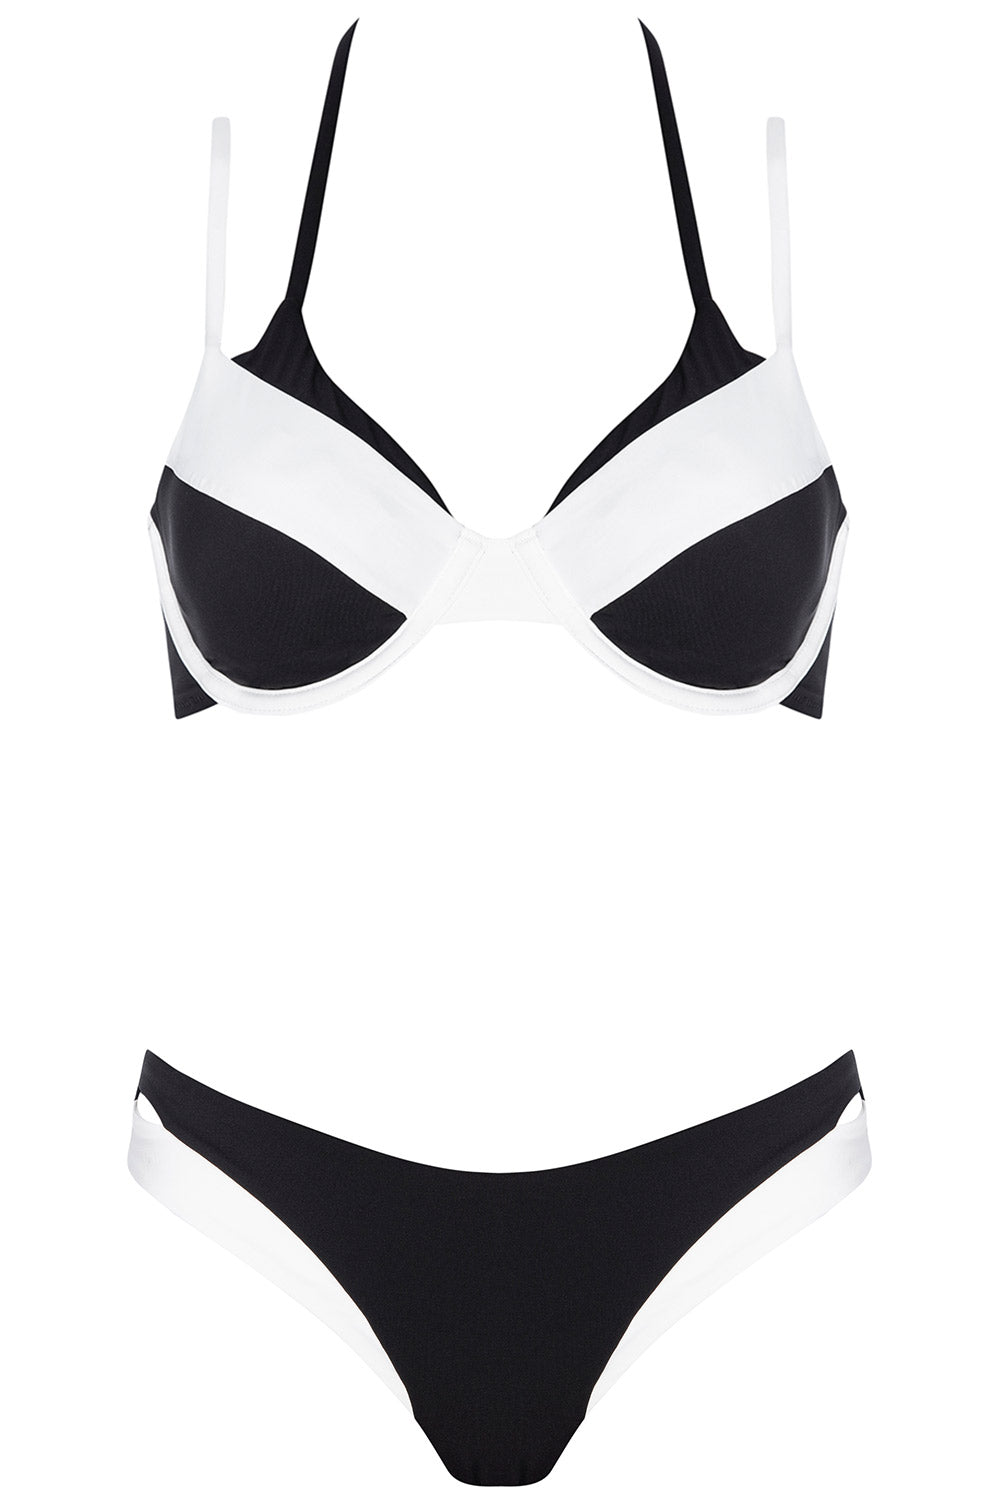 Front view of the Ibiza bikini monocromo set on the white background